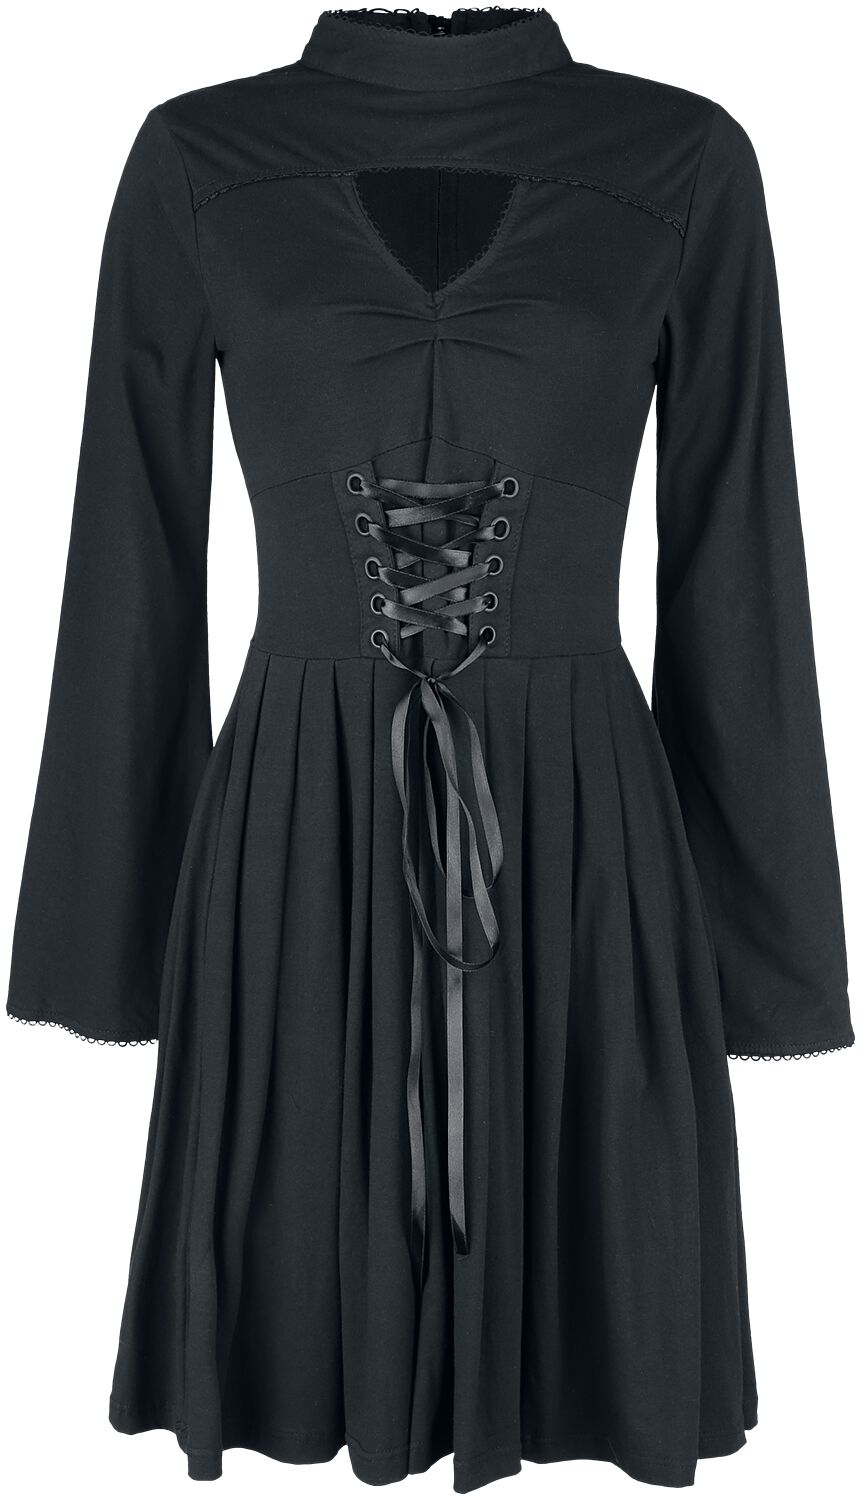 Poizen Industries - Gothic Kleid knielang - Stranger Dress - S bis 4XL - für Damen - Größe 3XL - schwarz